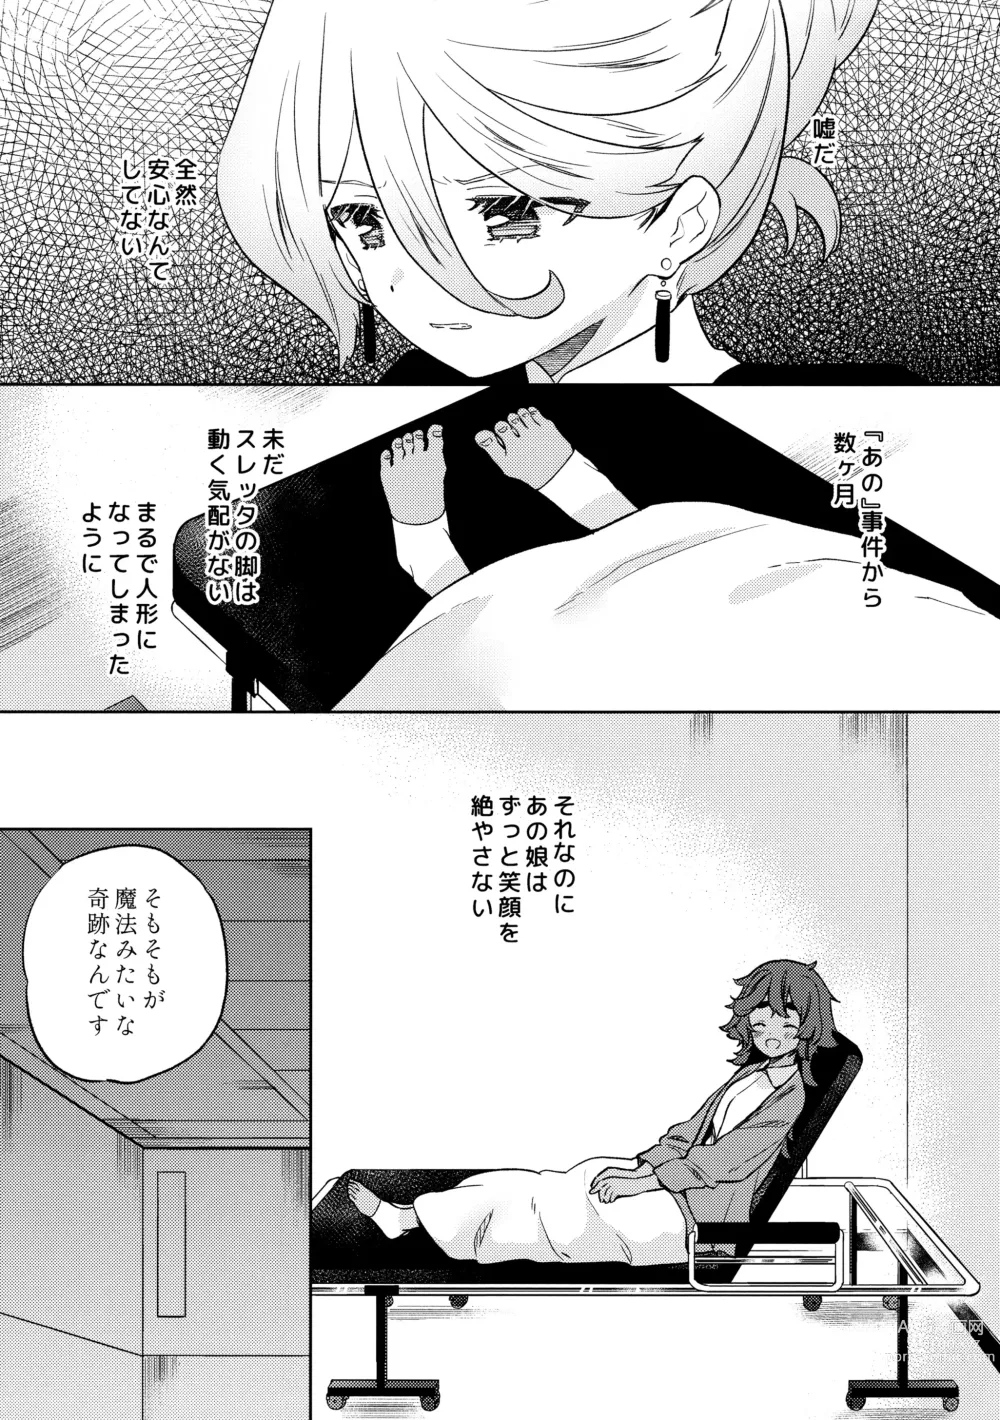 Page 9 of doujinshi Kienai Ato, Egao No Riyuu, Onaka Ga Suite.